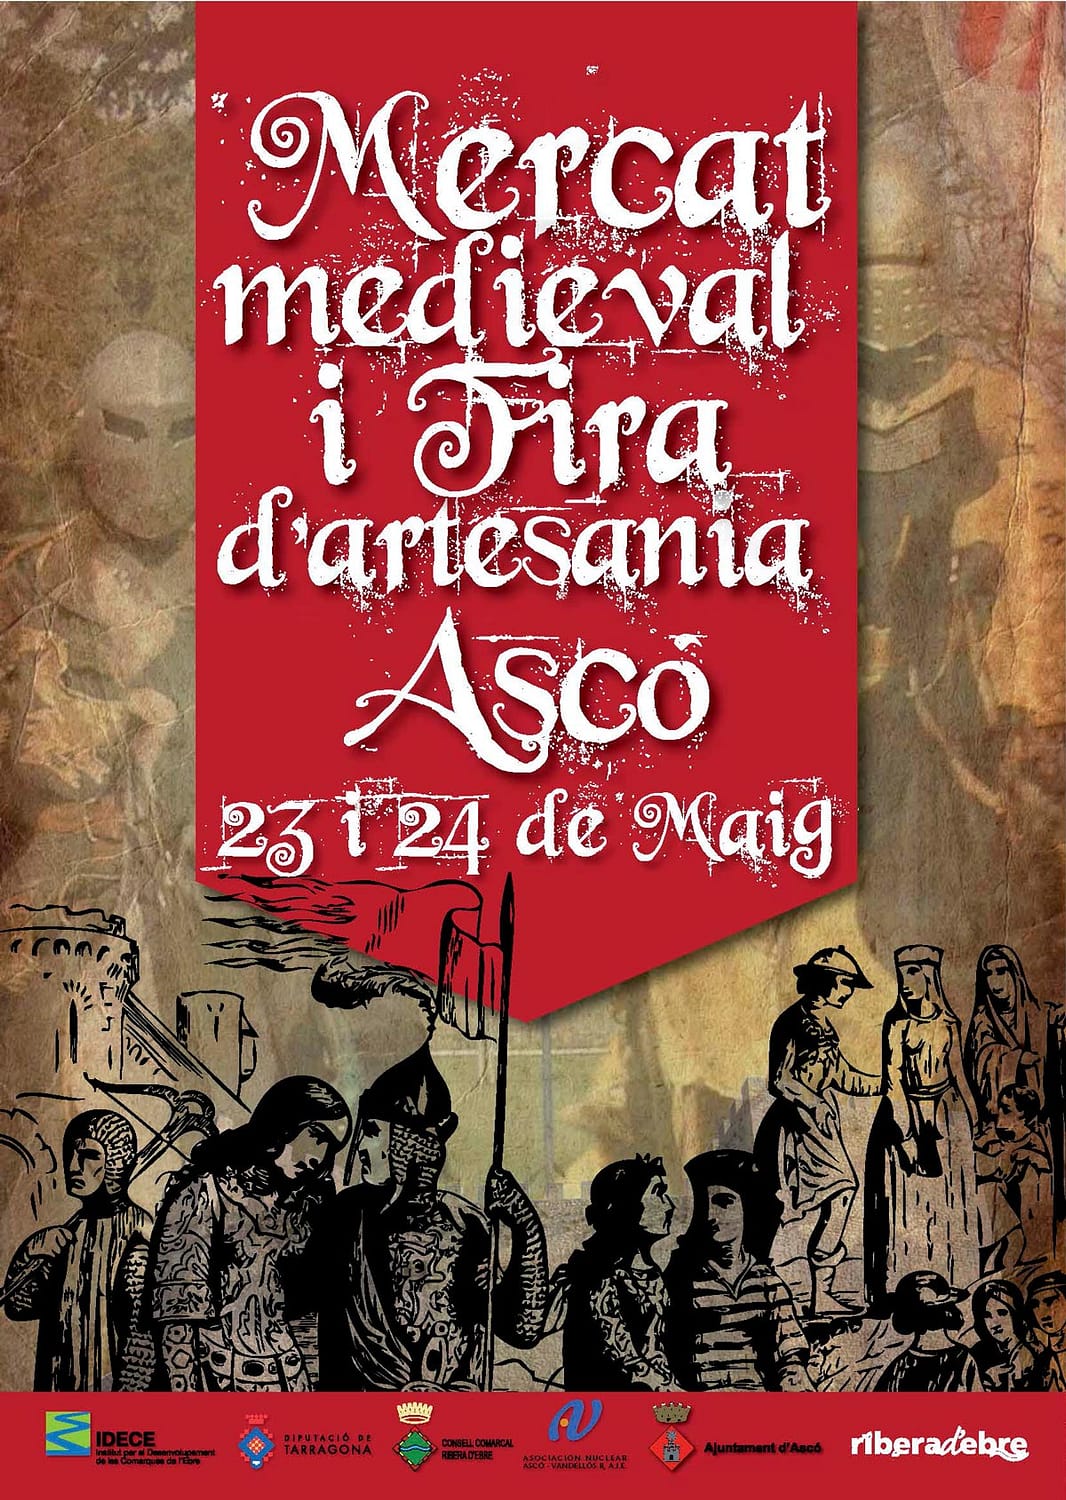 Cartell amb una fotografia il·lustrada de la III Fira d'Artesania i Mercat Medieval, d'Ascó 2009